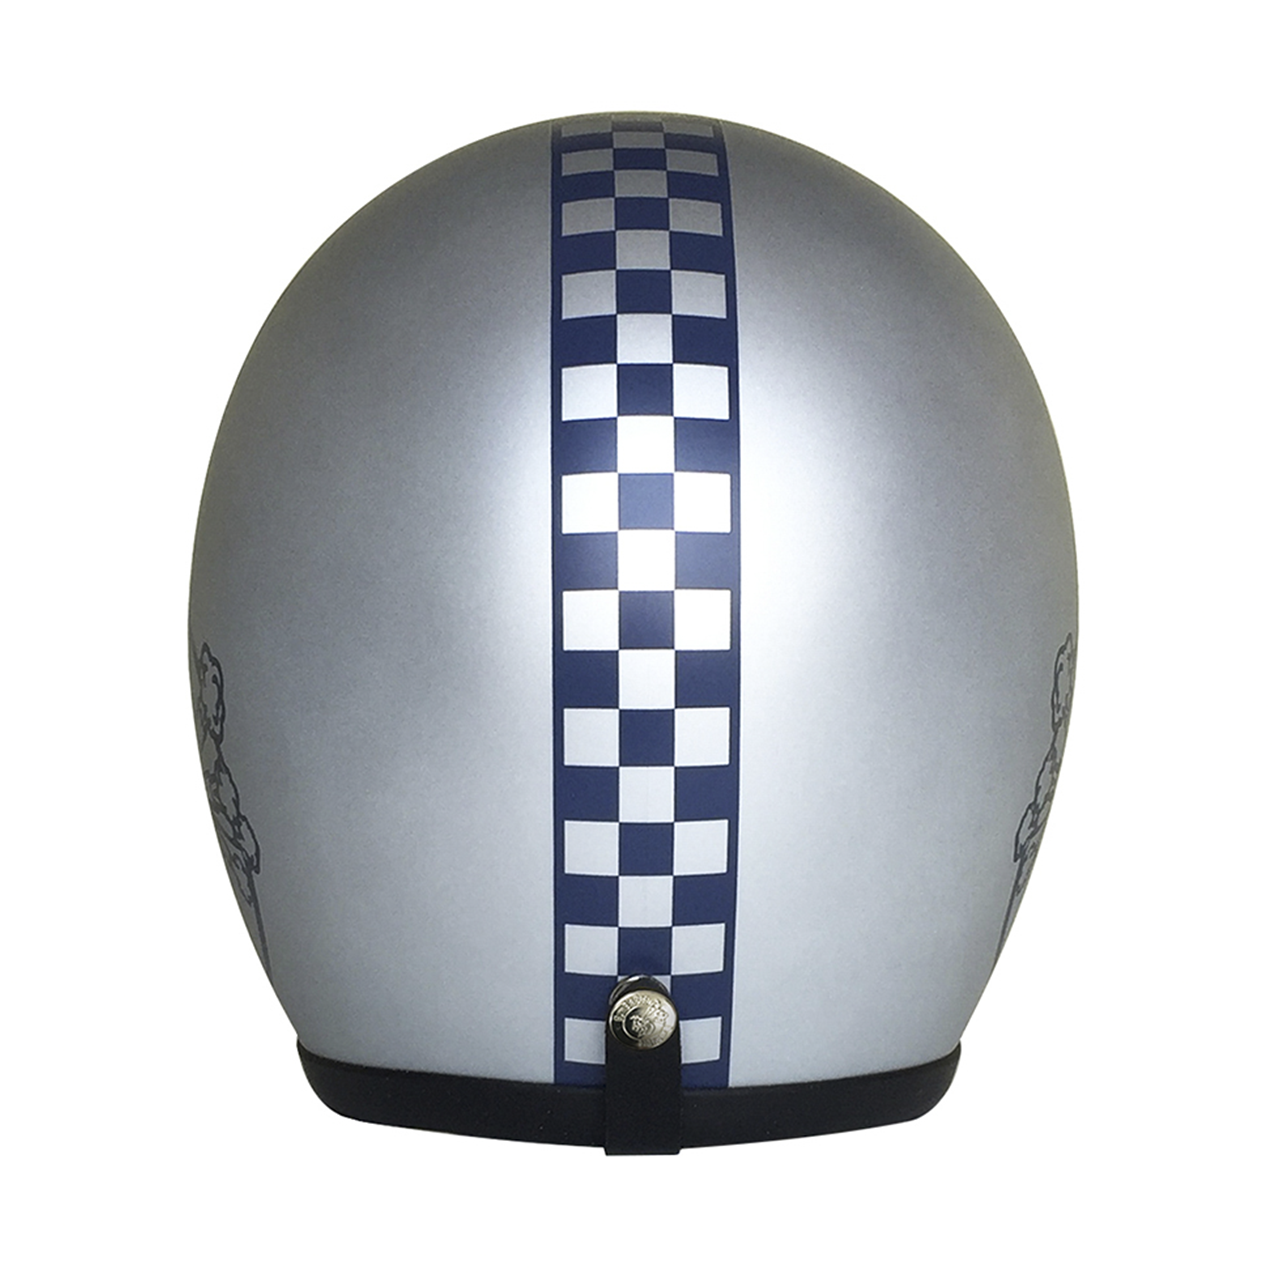 BumBleBee■バンブルビー ジェットヘルメット チェッカー/マットシルバー 立花ヘルメット製GT-NP1型帽体